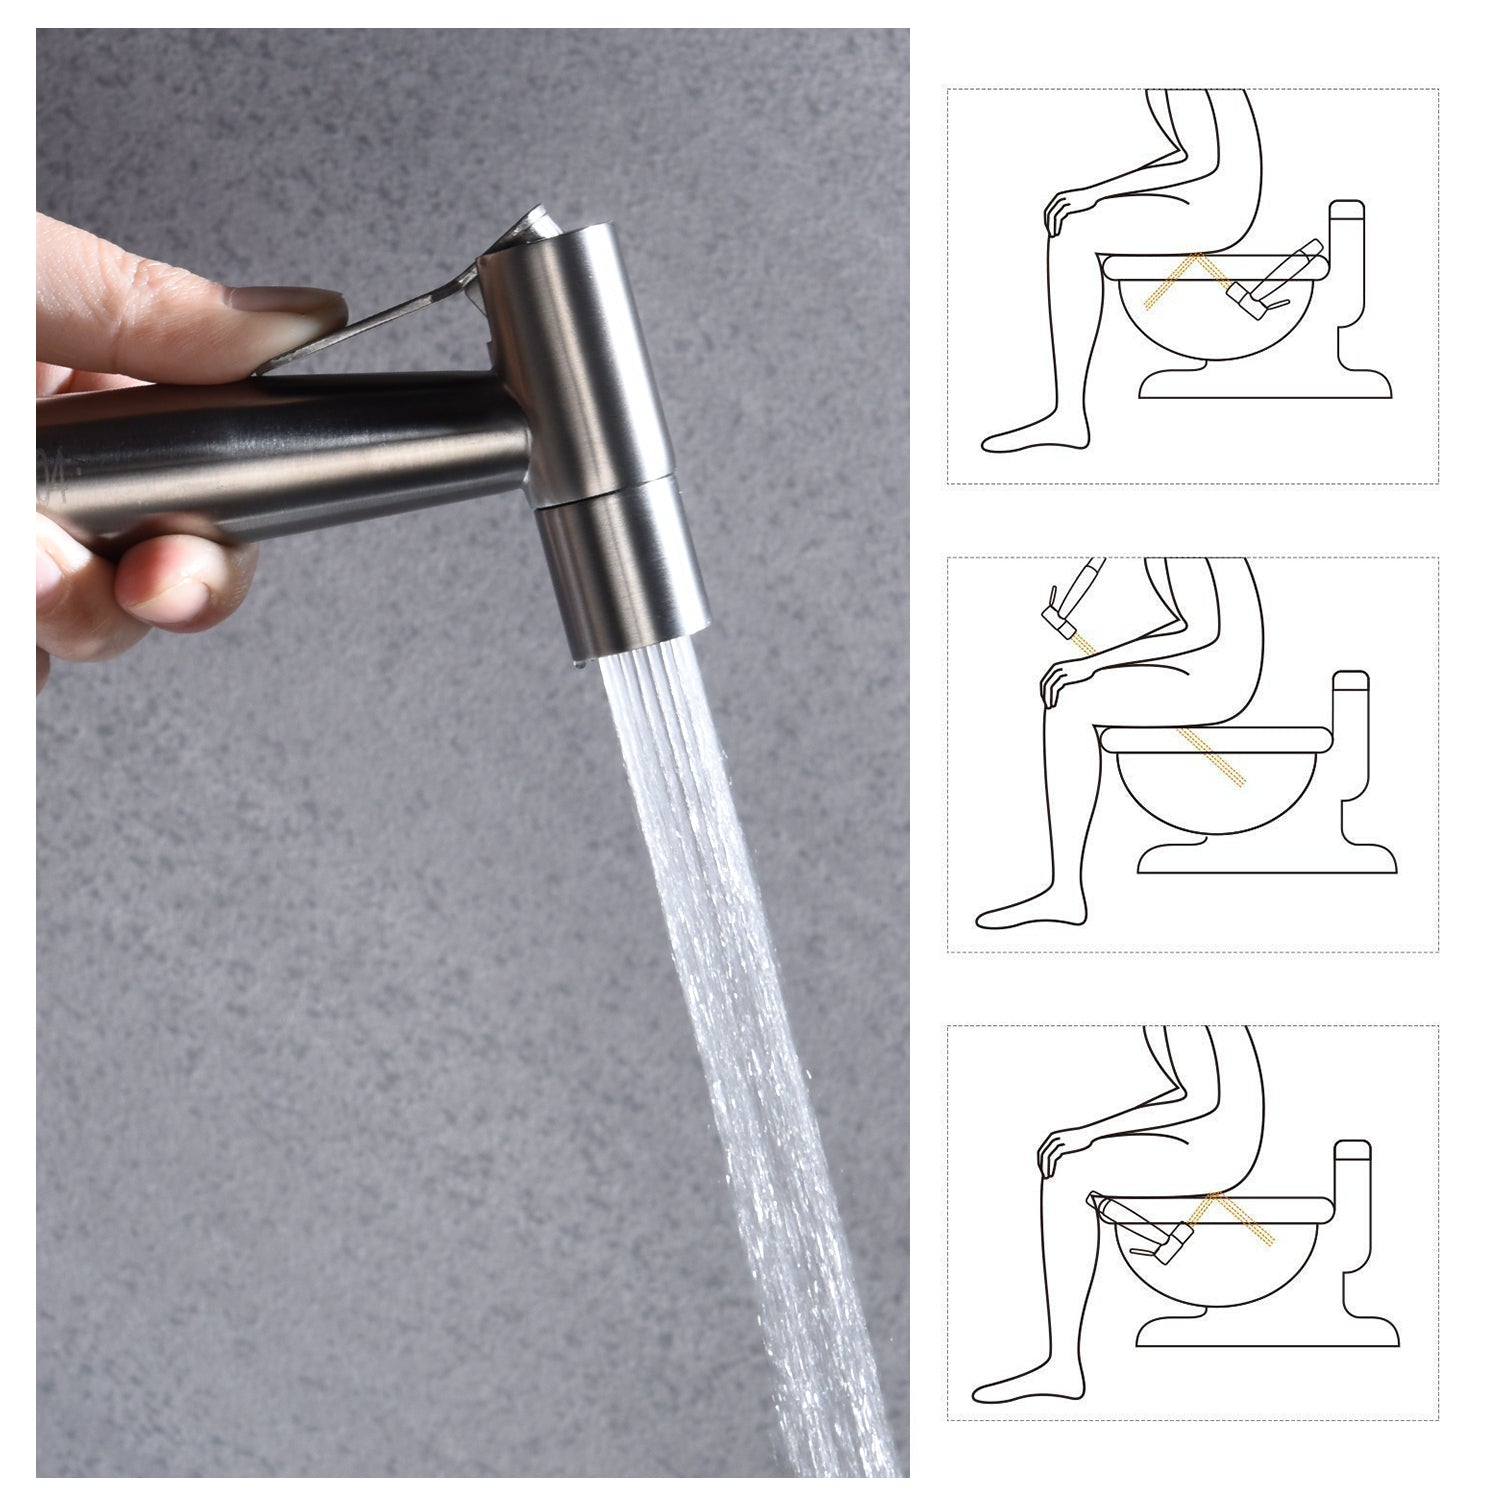 Handheld Bidet Toilet Sprayer Kit Jet Faucet Brass Stainless Steel